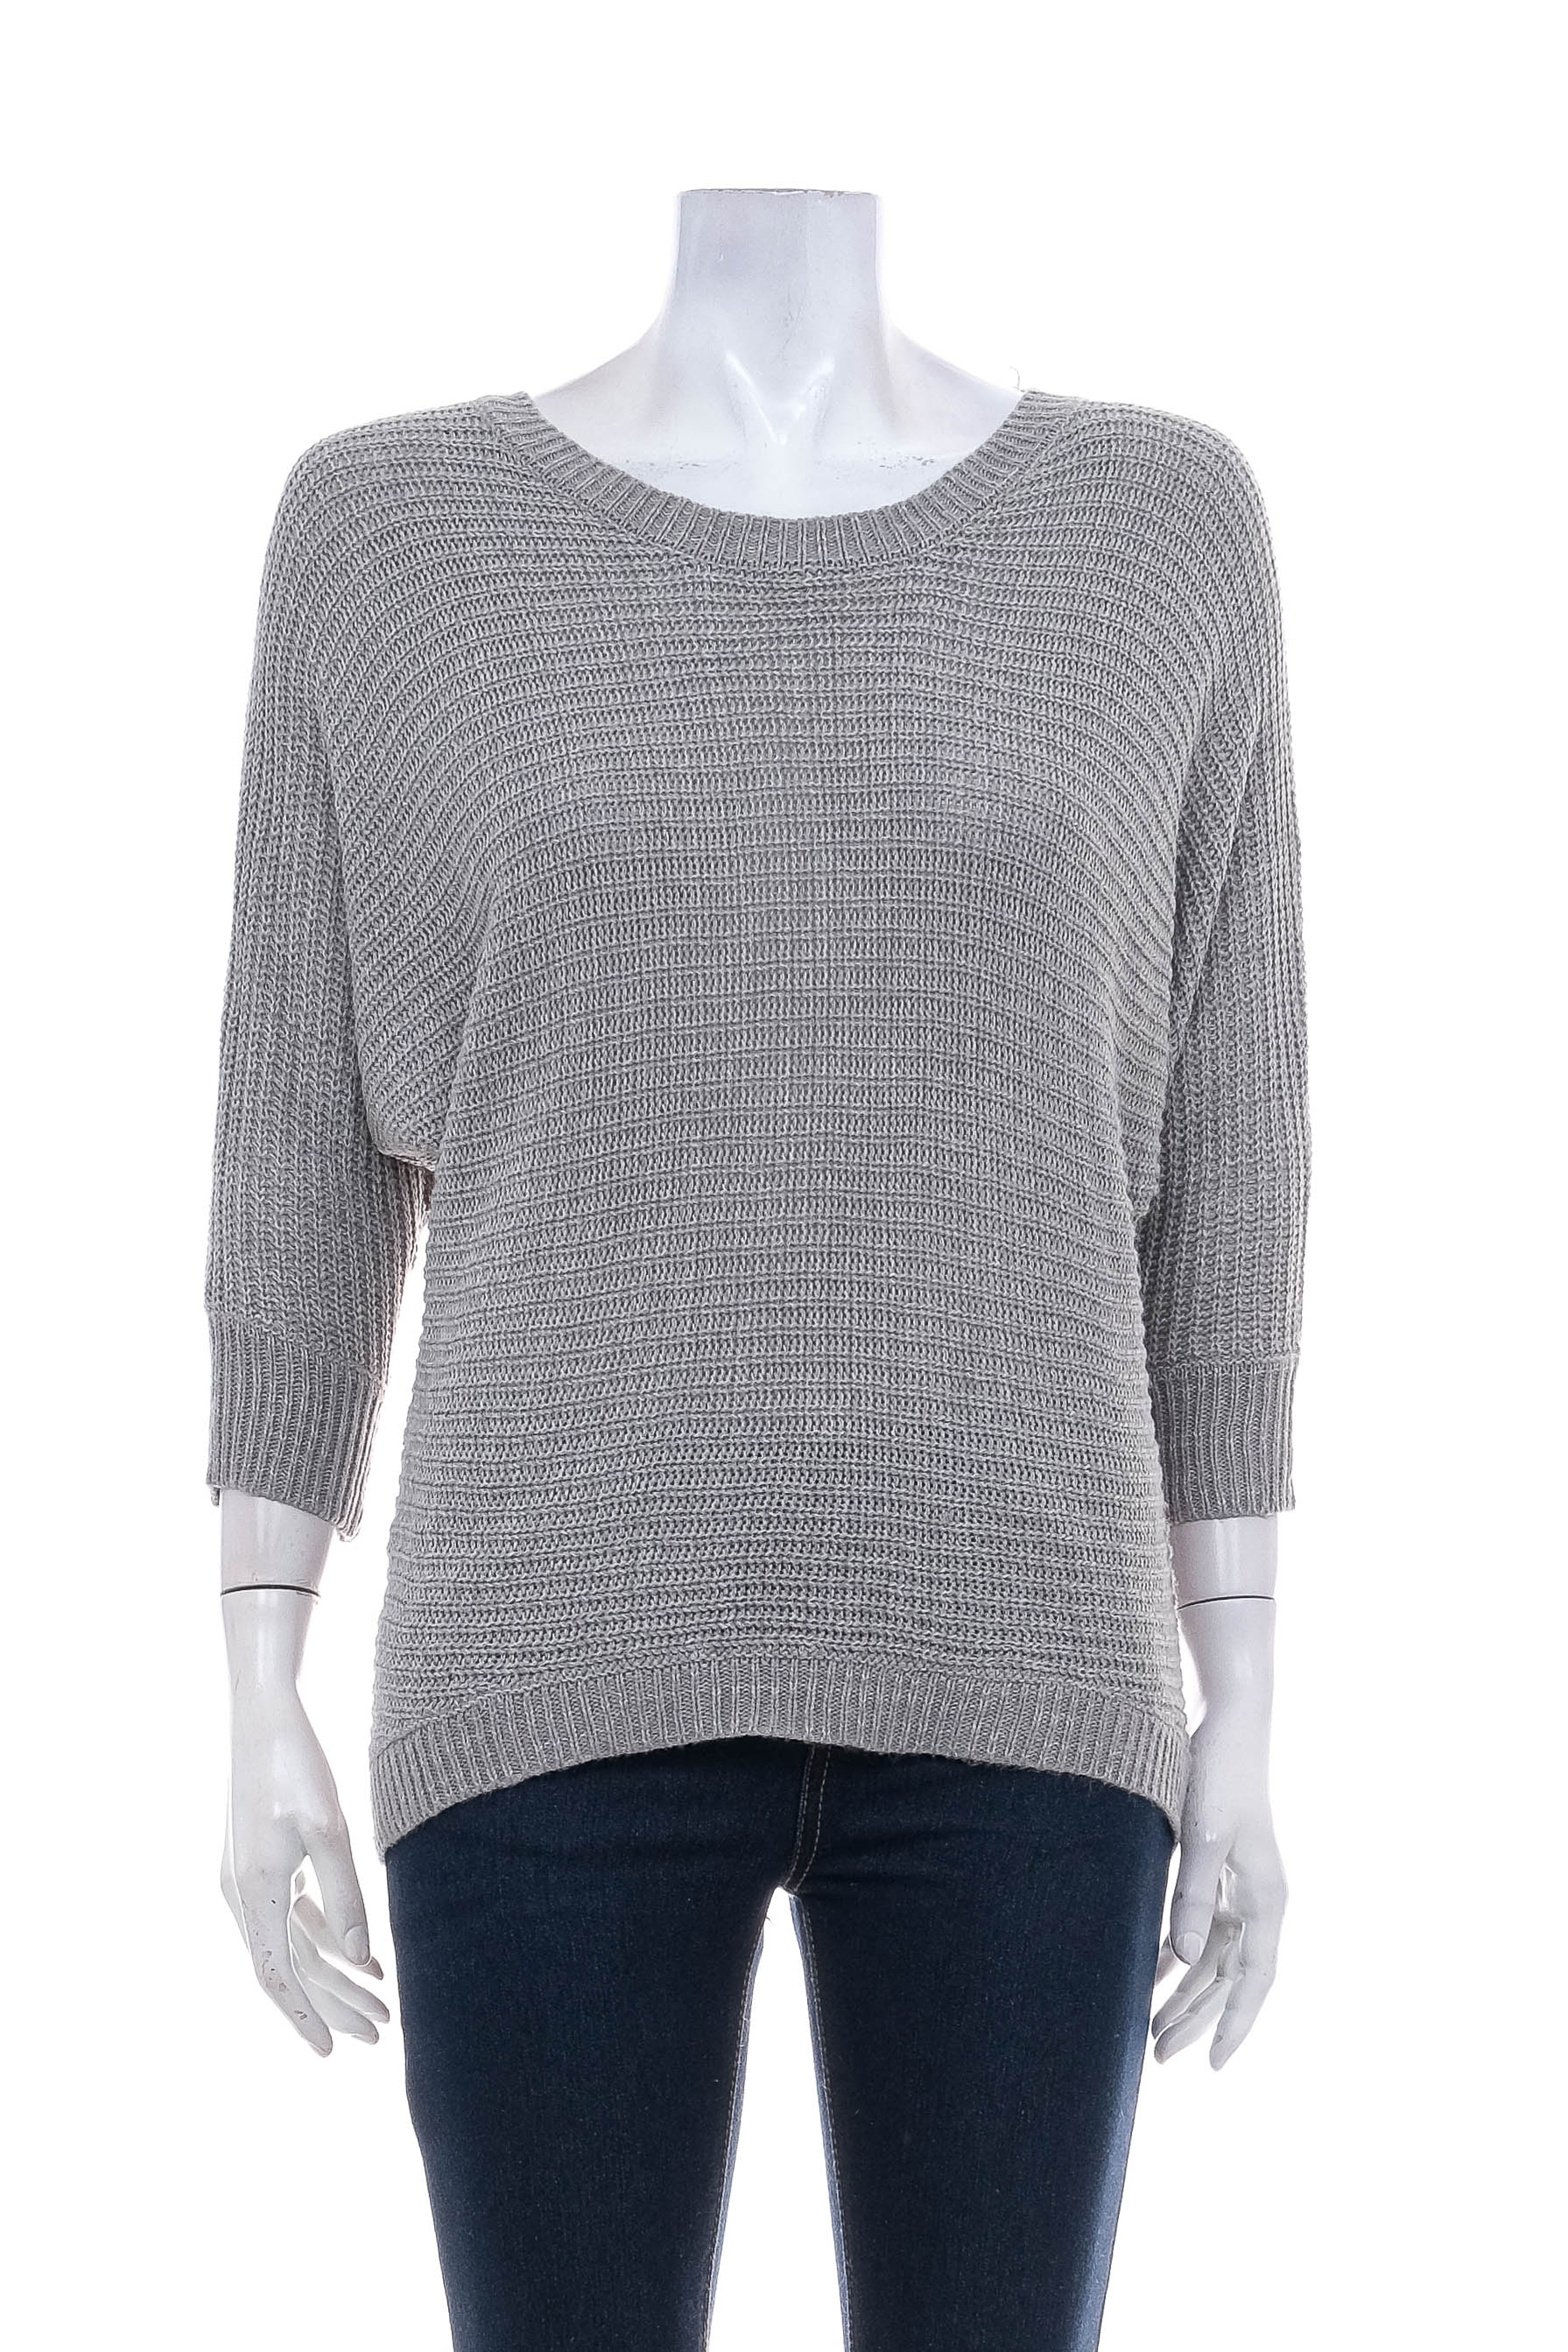 Women's sweater - MIA & TESS - 0